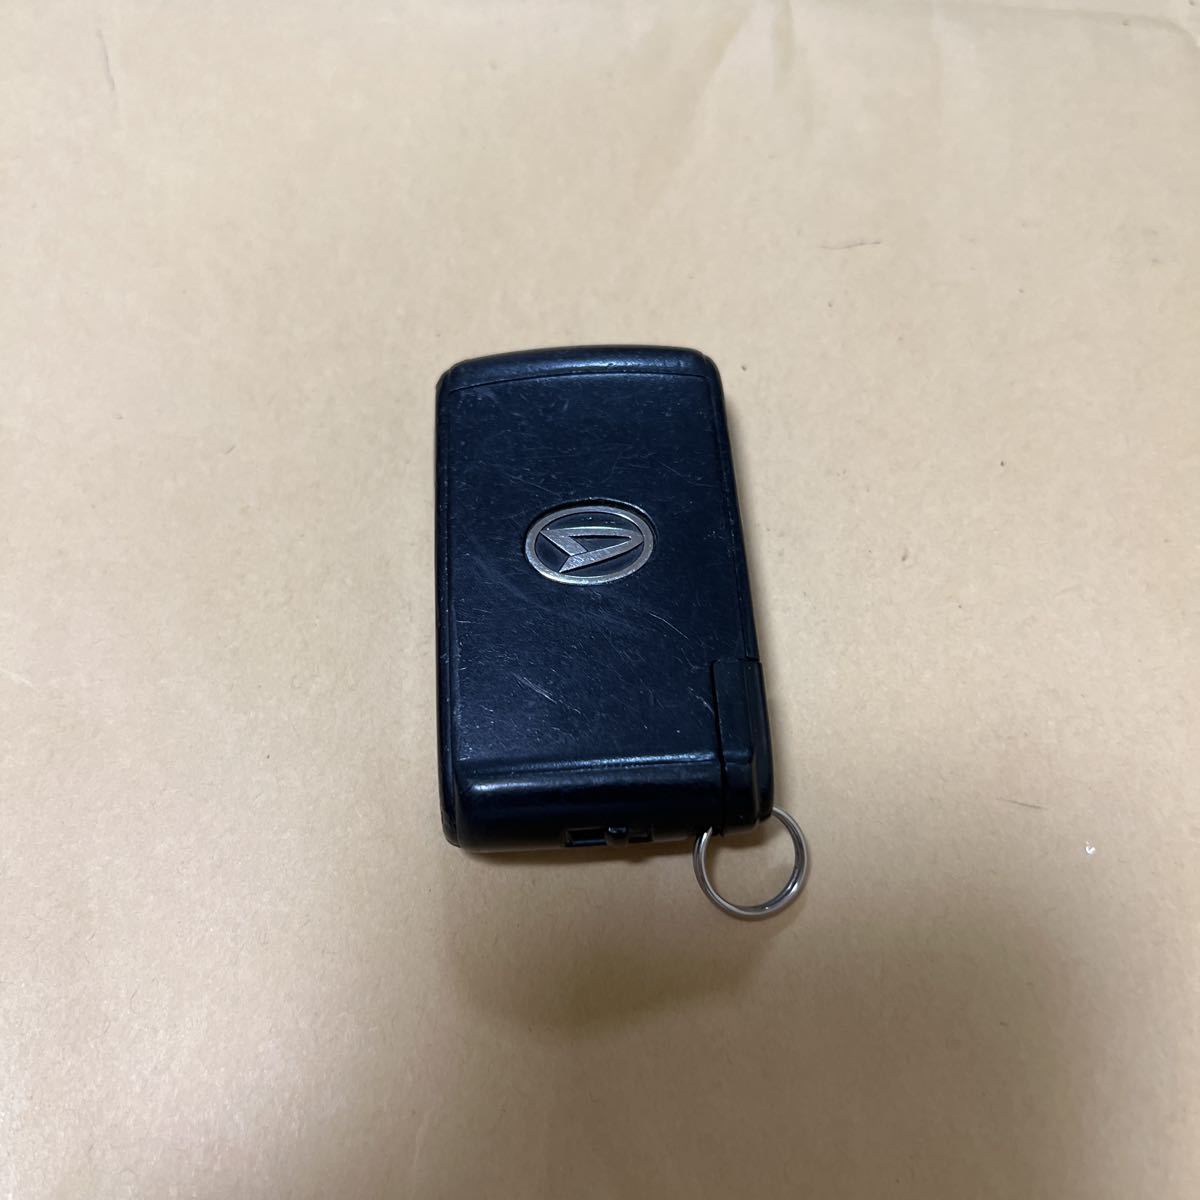  бесплатная доставка * Daihatsu Tanto оригинальный "умный" ключ 3 кнопка L375S L385S дистанционный ключ электрический скользящий 007YUU LO499 70